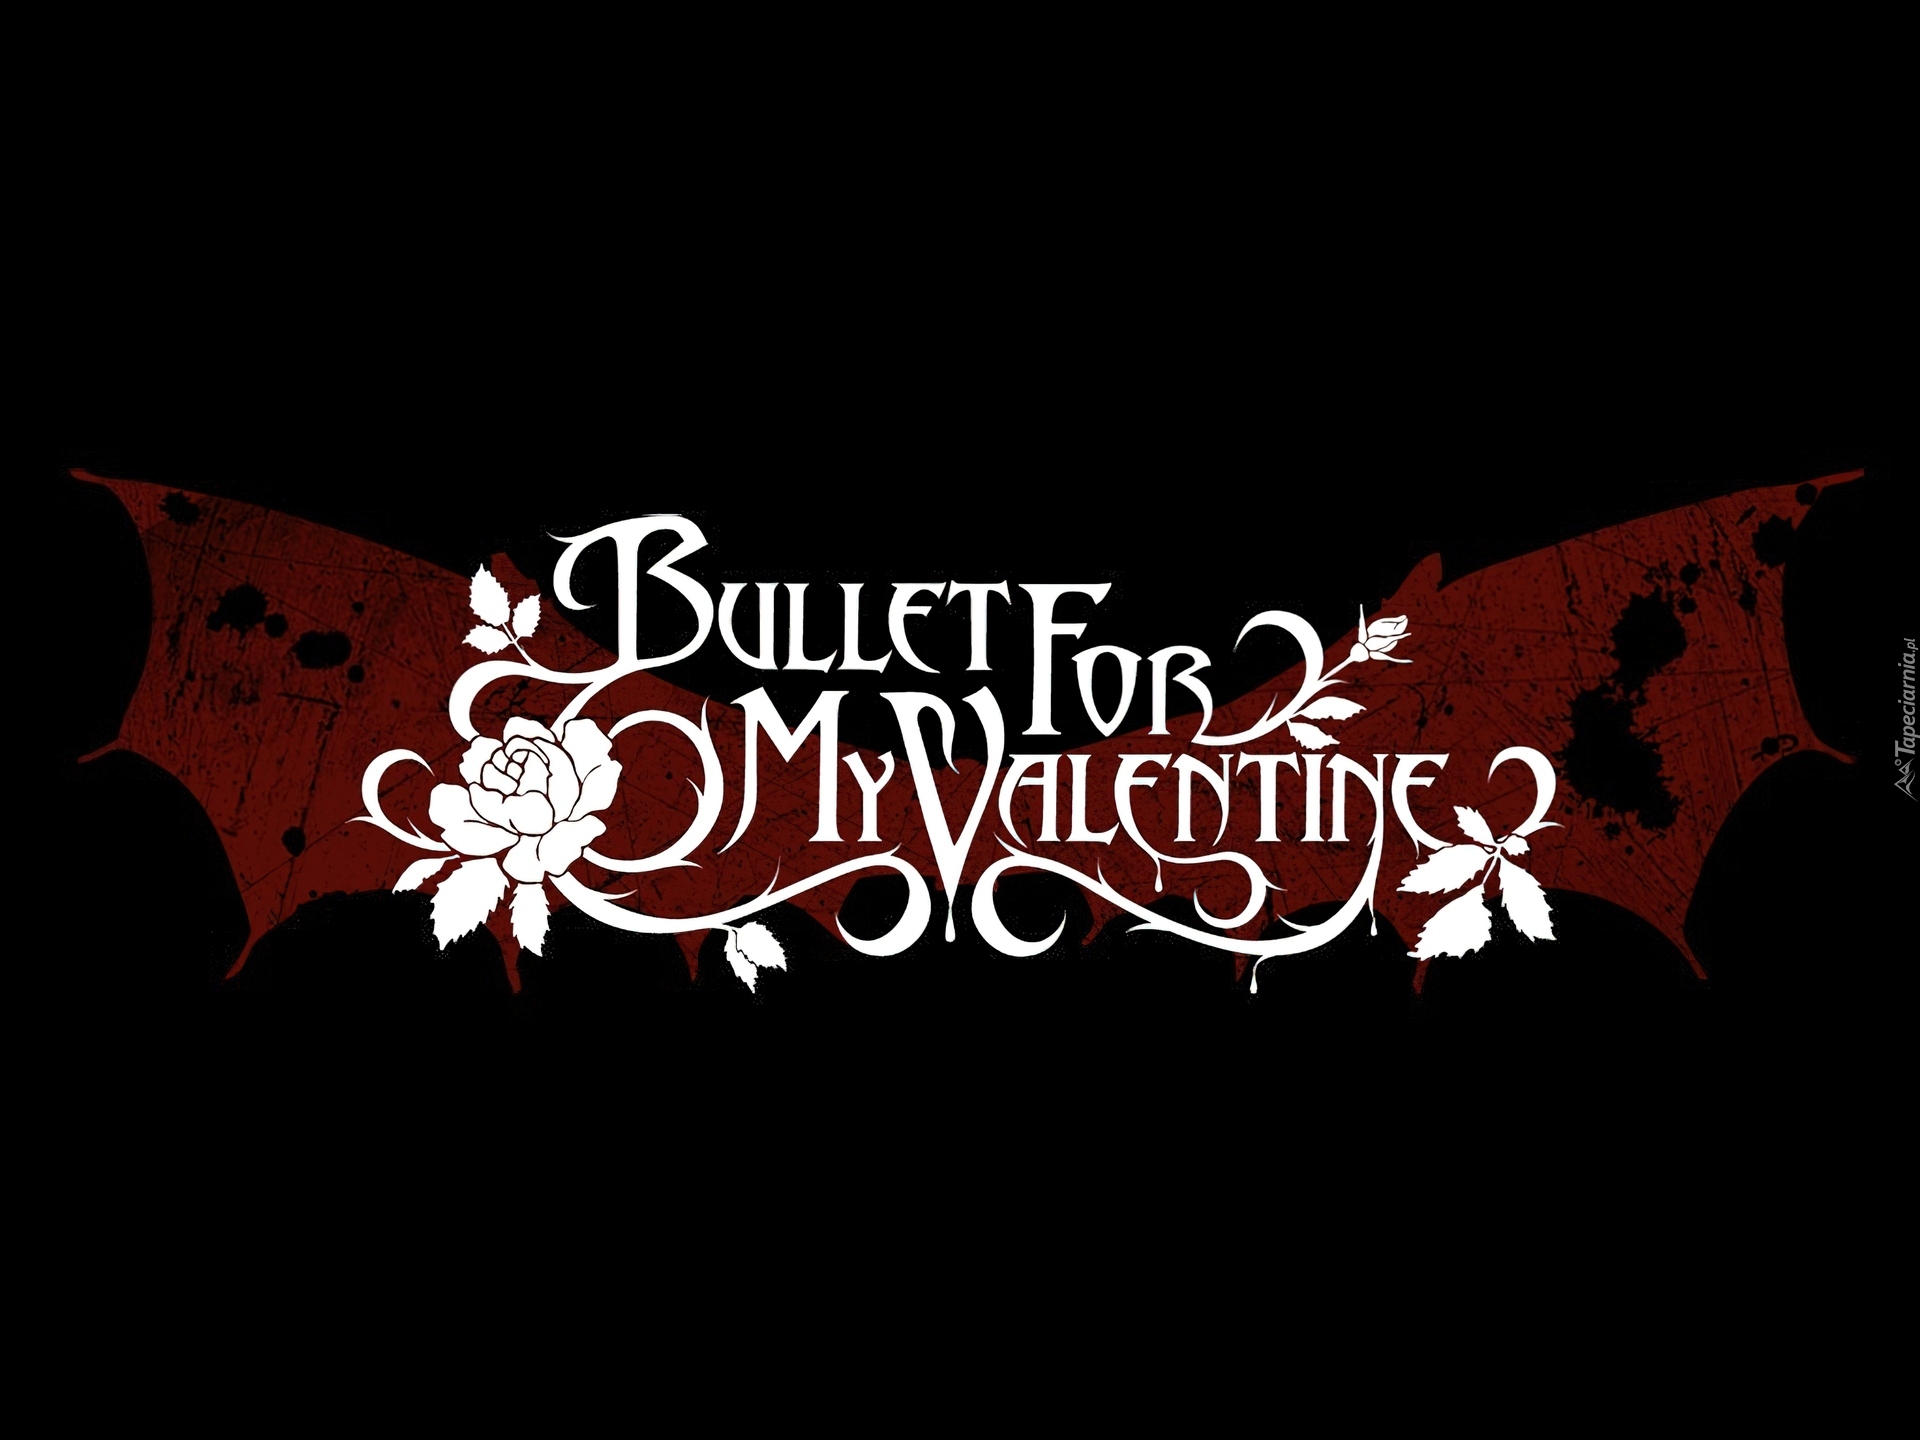 Bullet For My Valentine,nazwa zespołu, kwiatki